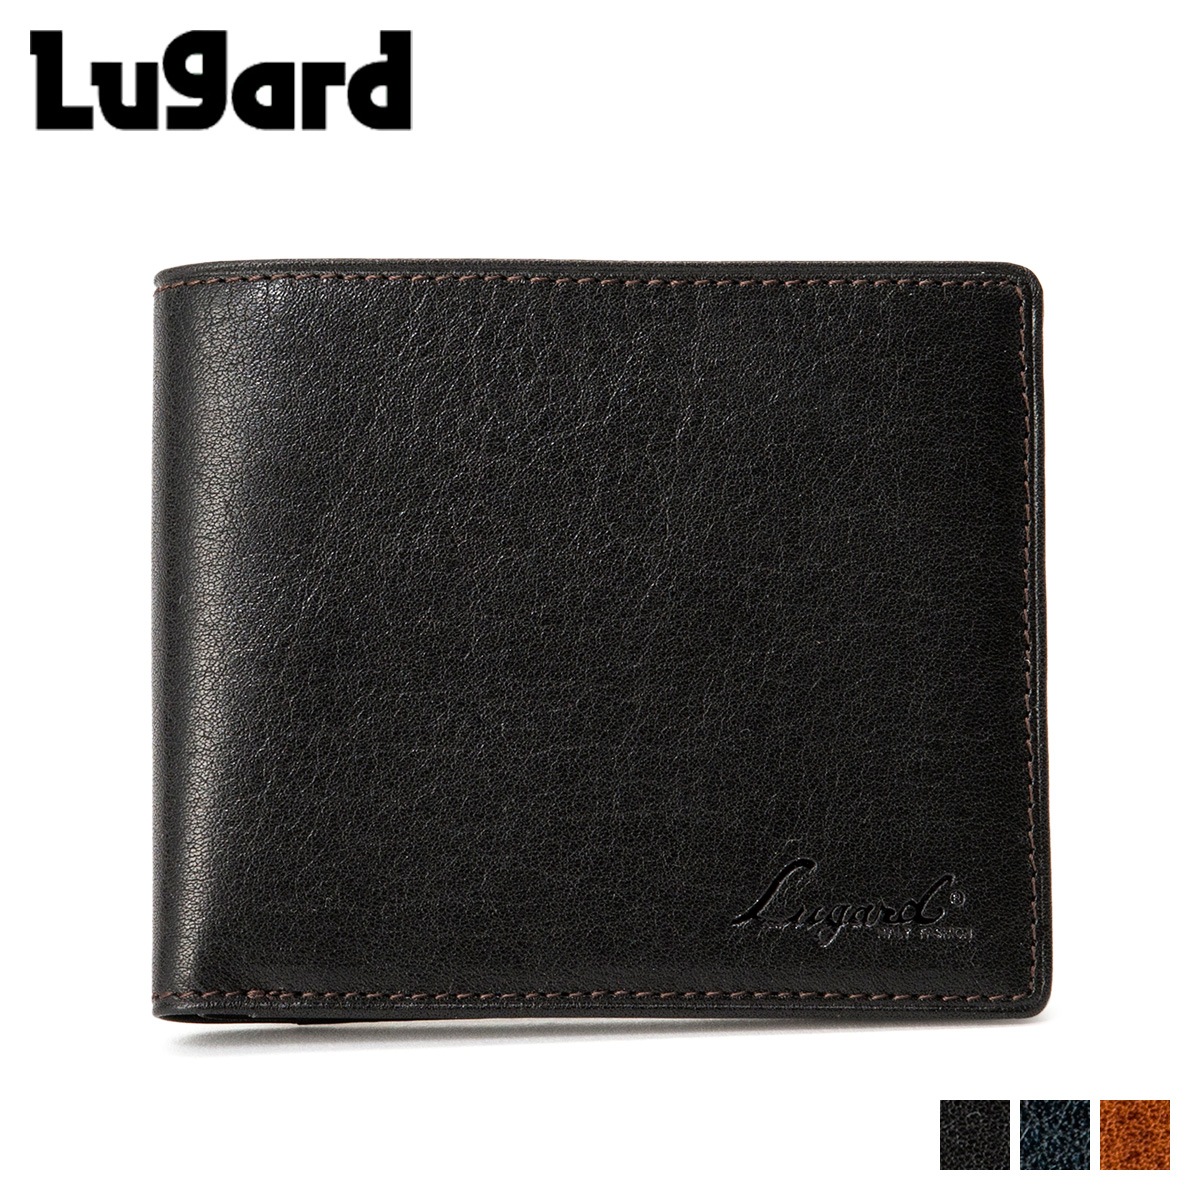 ラガード青木鞄 財布 ミニ財布 二つ折り G3 メンズ ブラック ネイビー ブラウン 5205